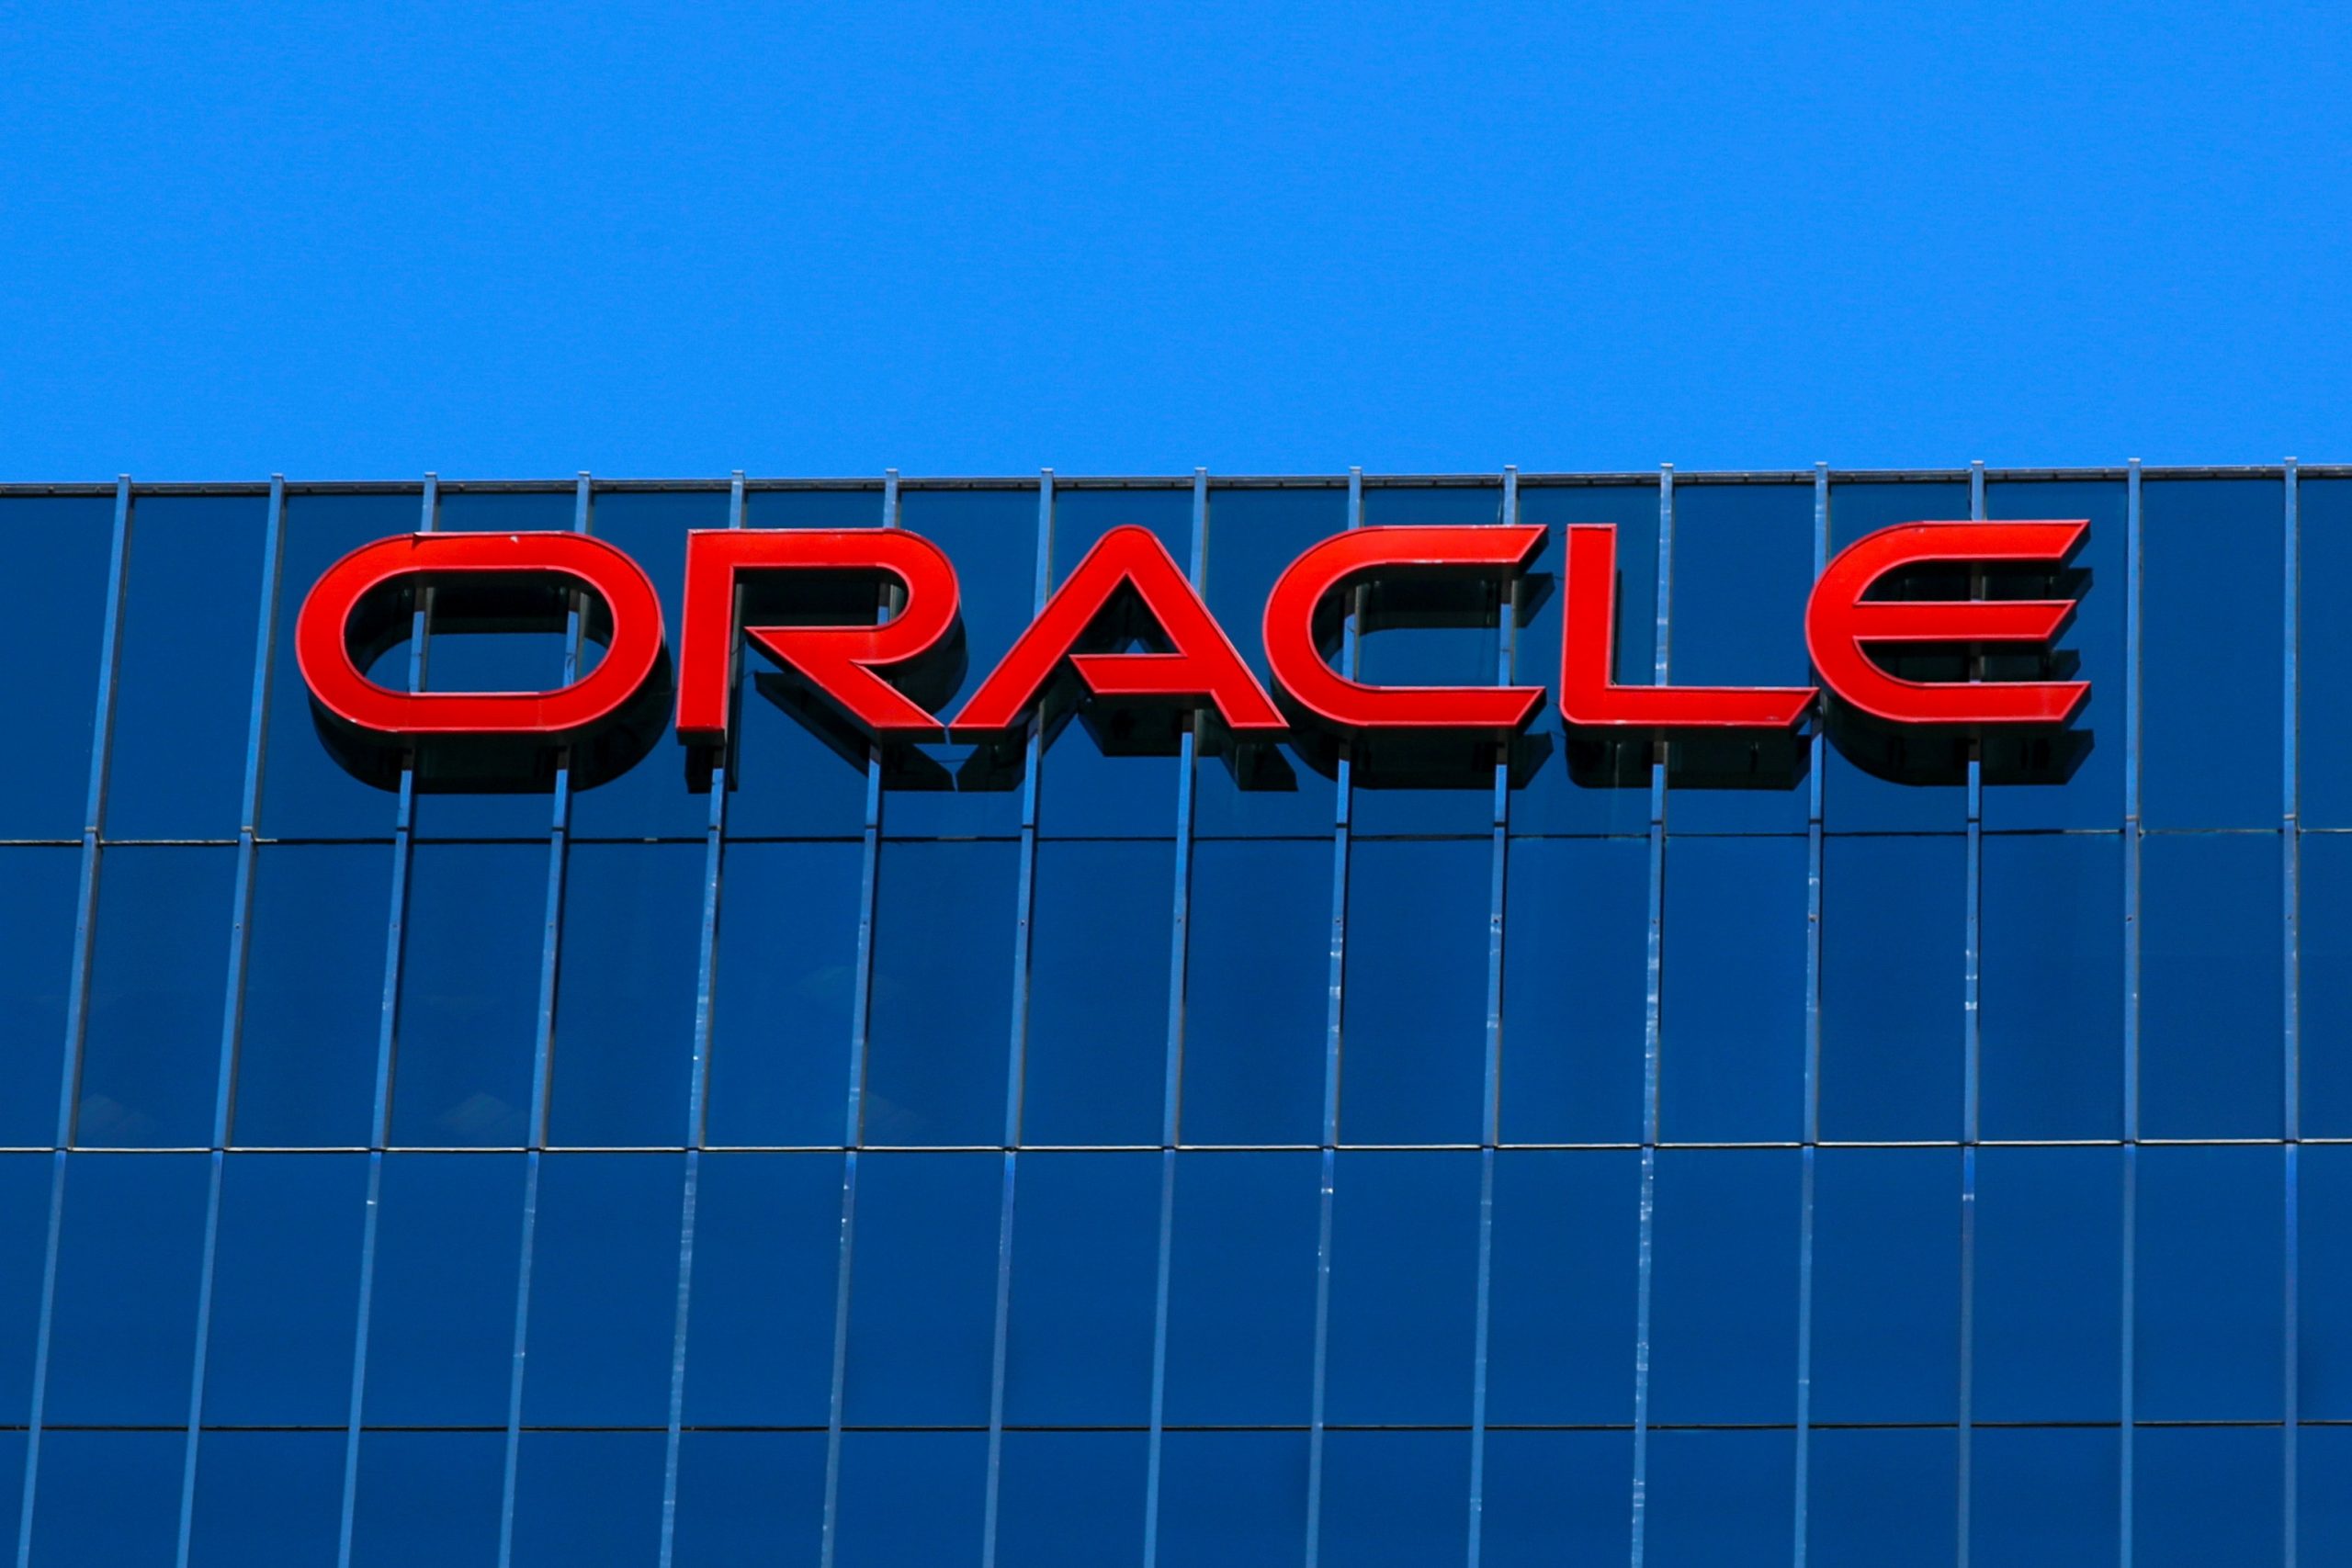 Η Oracle επενδύει 28 δισ. δολάρια για επέκταση στους ψηφιακούς ιατρικούς φακέλους